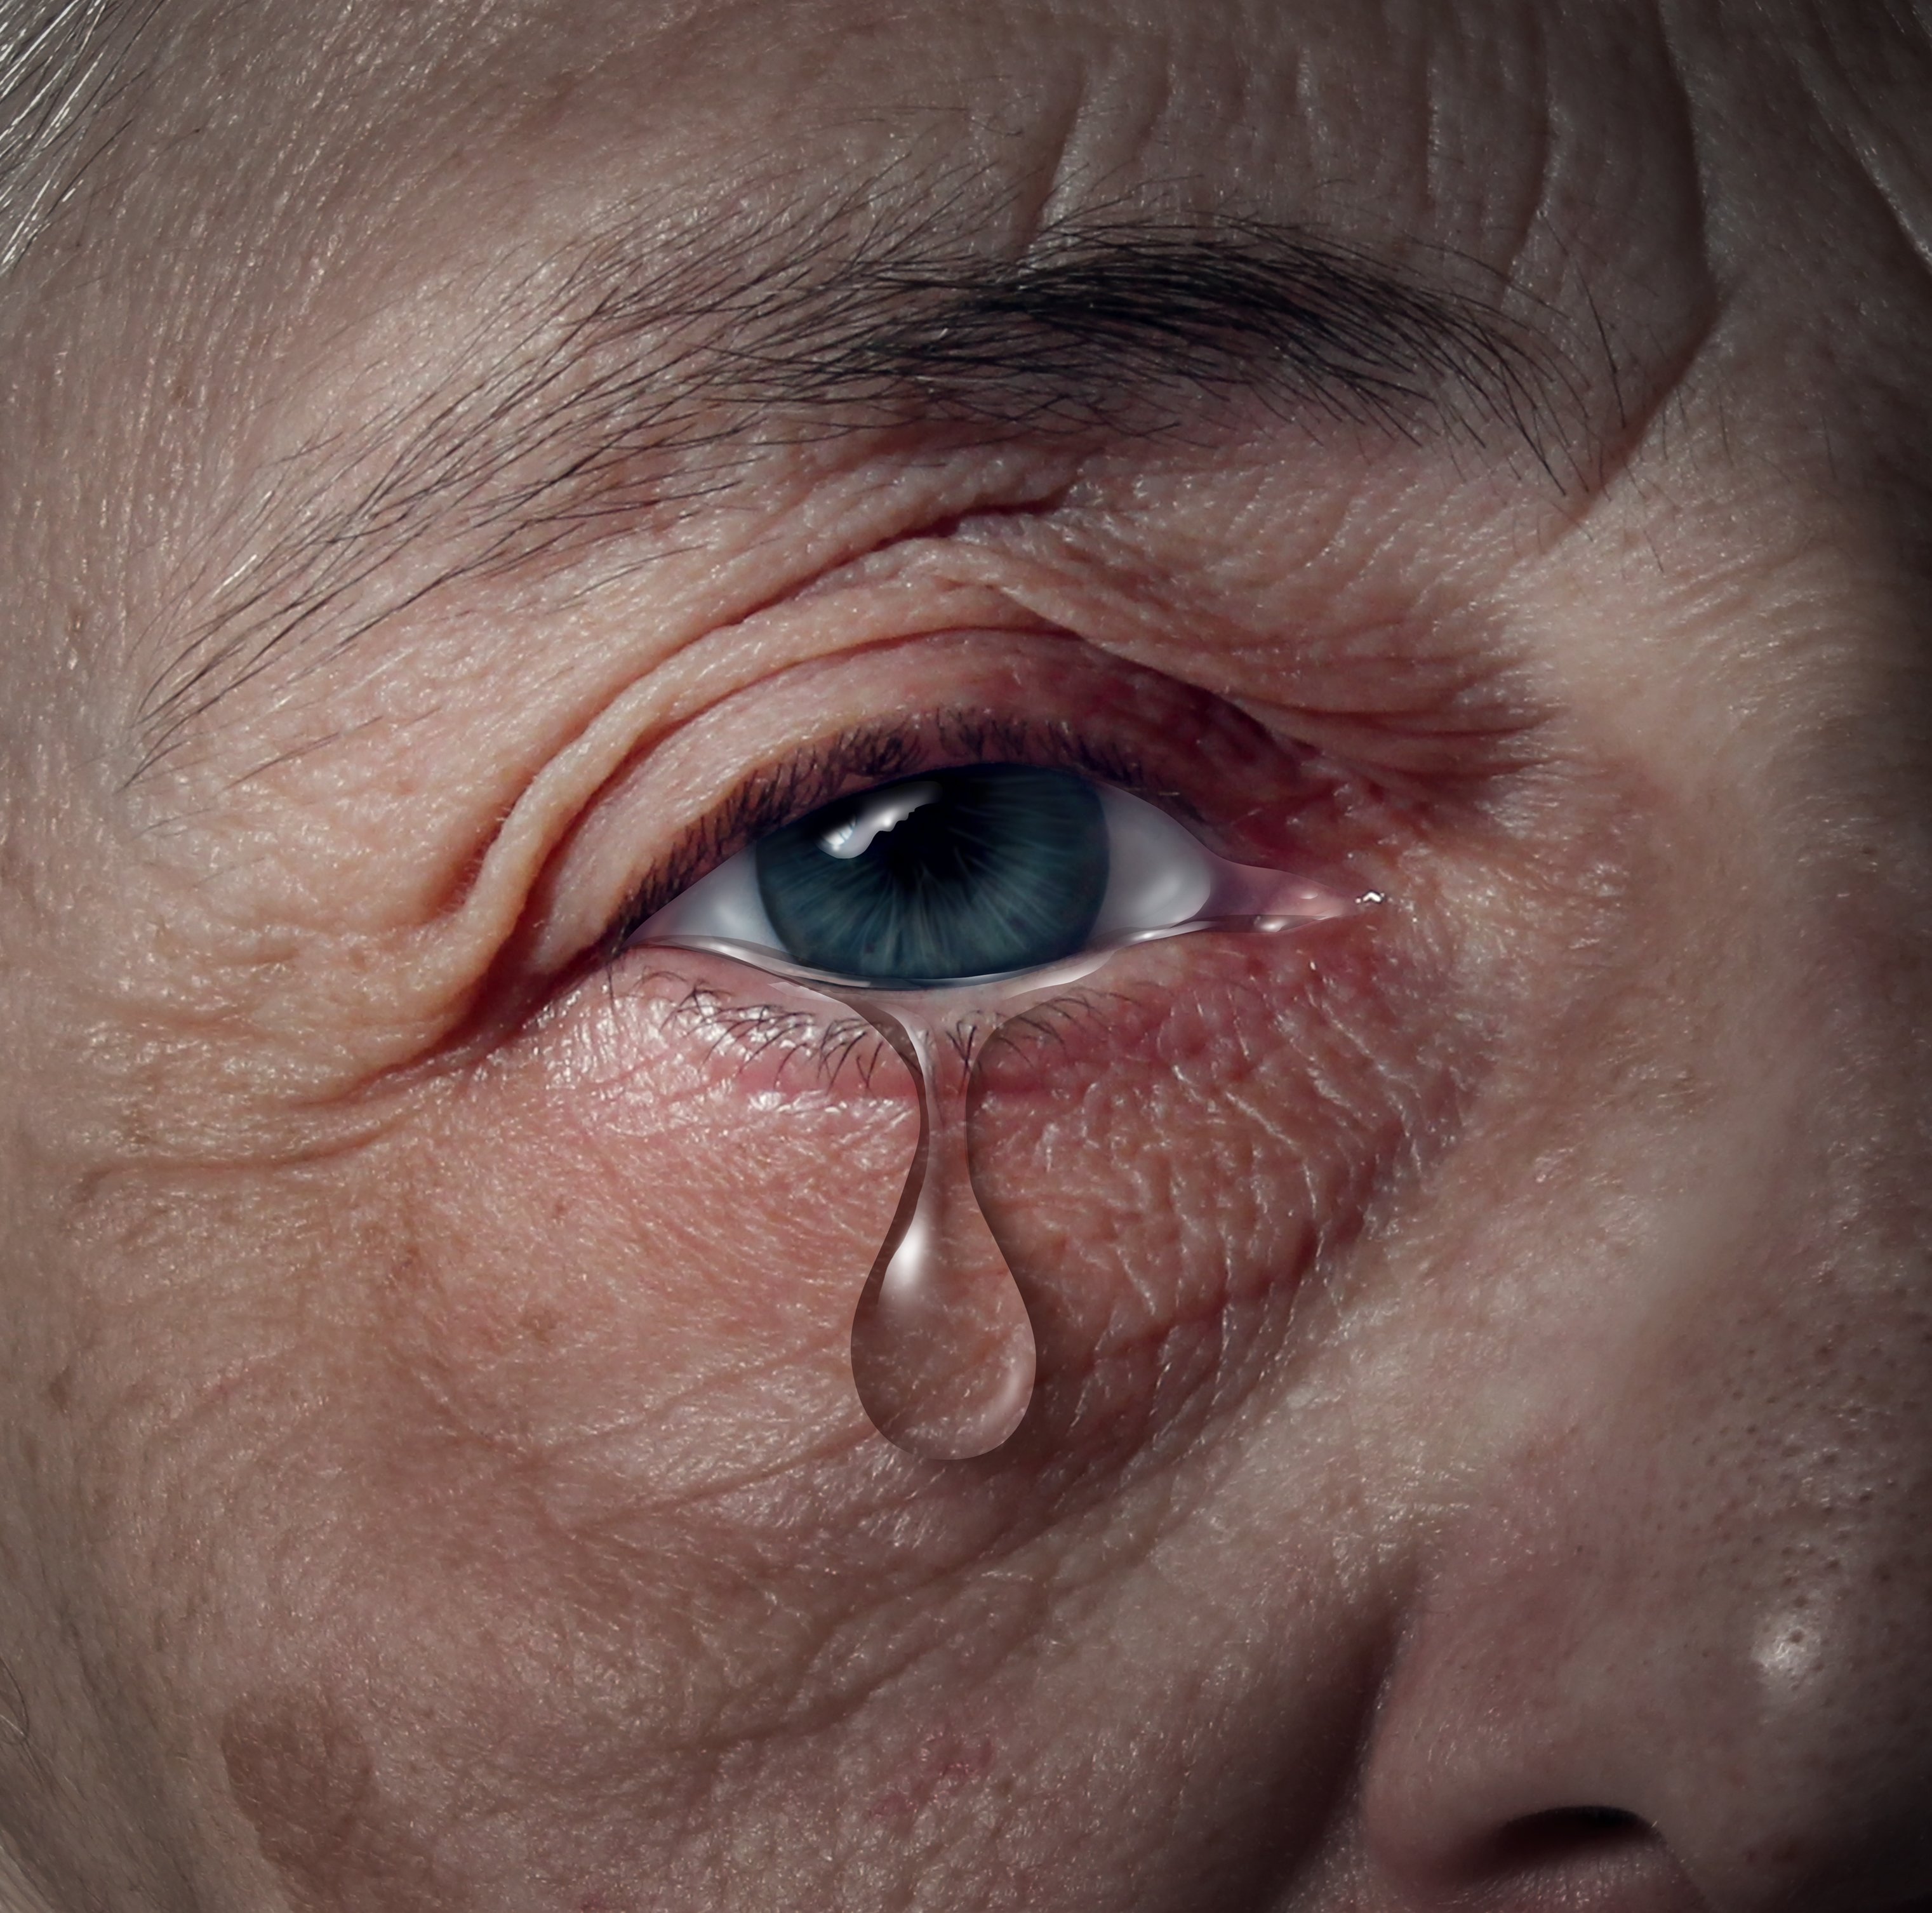 A teardrop falling from an elderly individual’s eye. │Source: Shutterstock